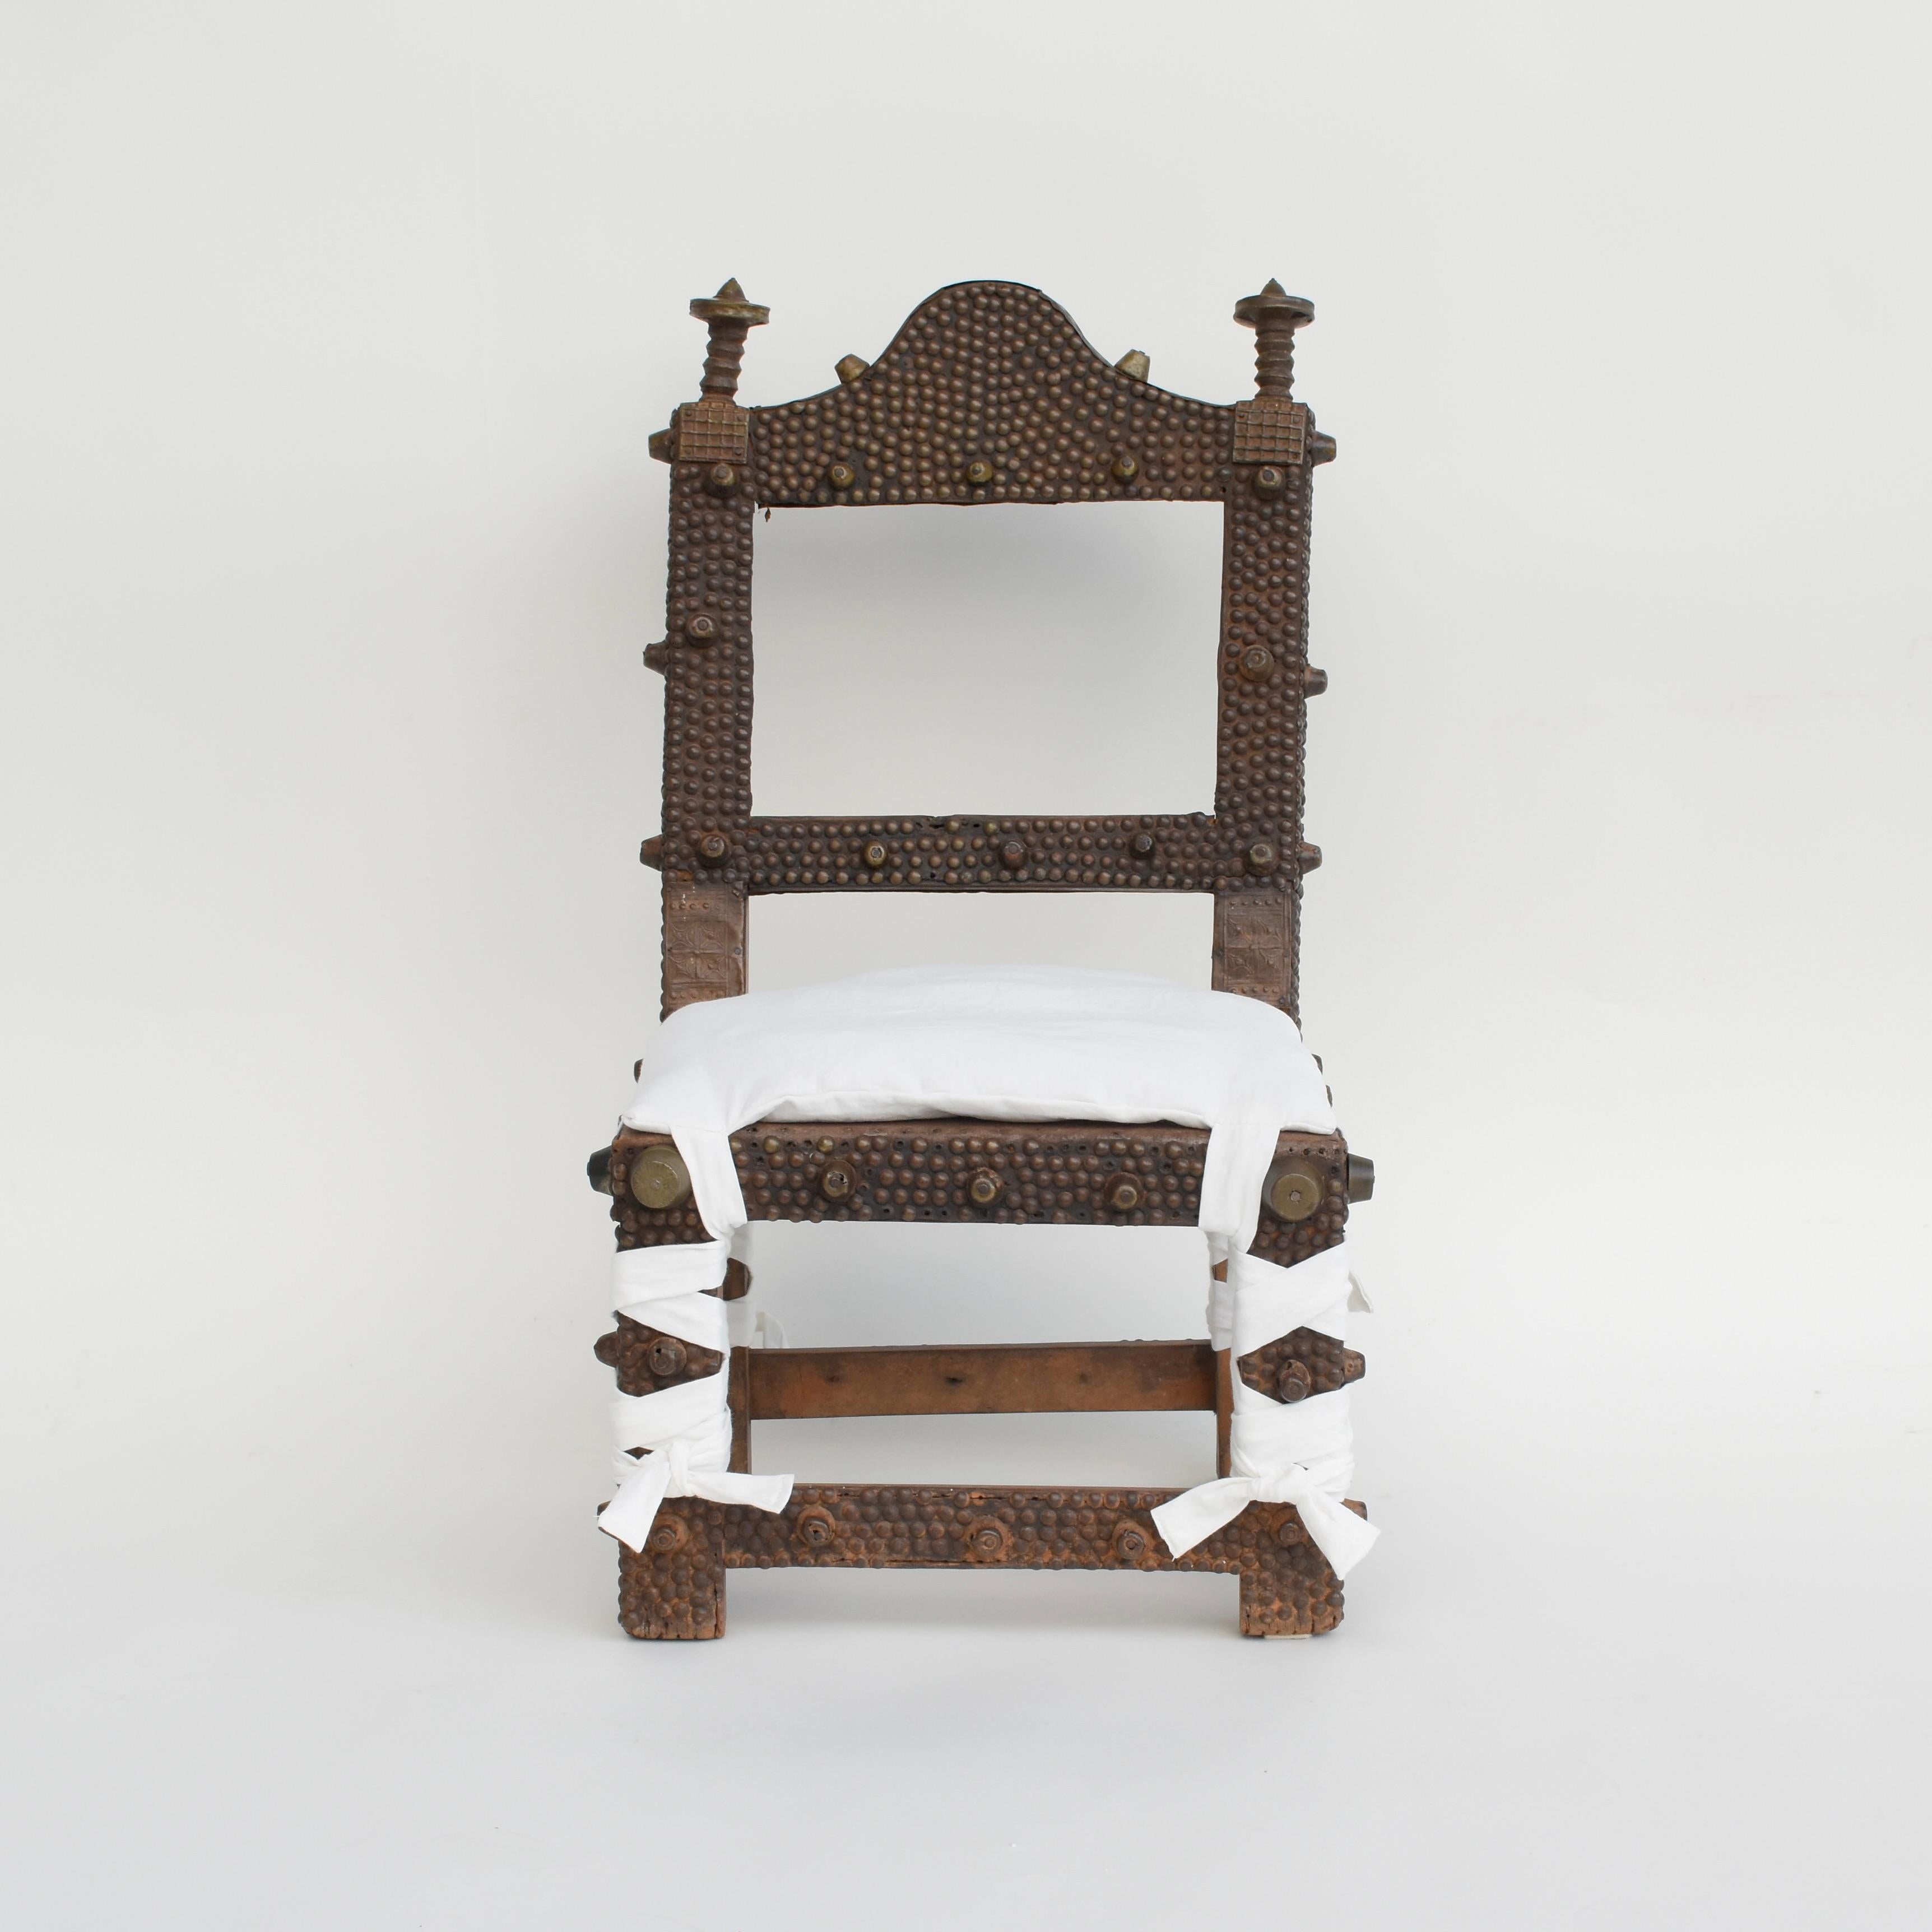 Une chaise royale dans la société Asante C'est un signe de pouvoir et de prestige utilisé exclusivement par les chefs. La chaise est composée d'un cadre en bois sculpté à la main, recouvert de clous et de punaises en laiton martelé et d'une assise